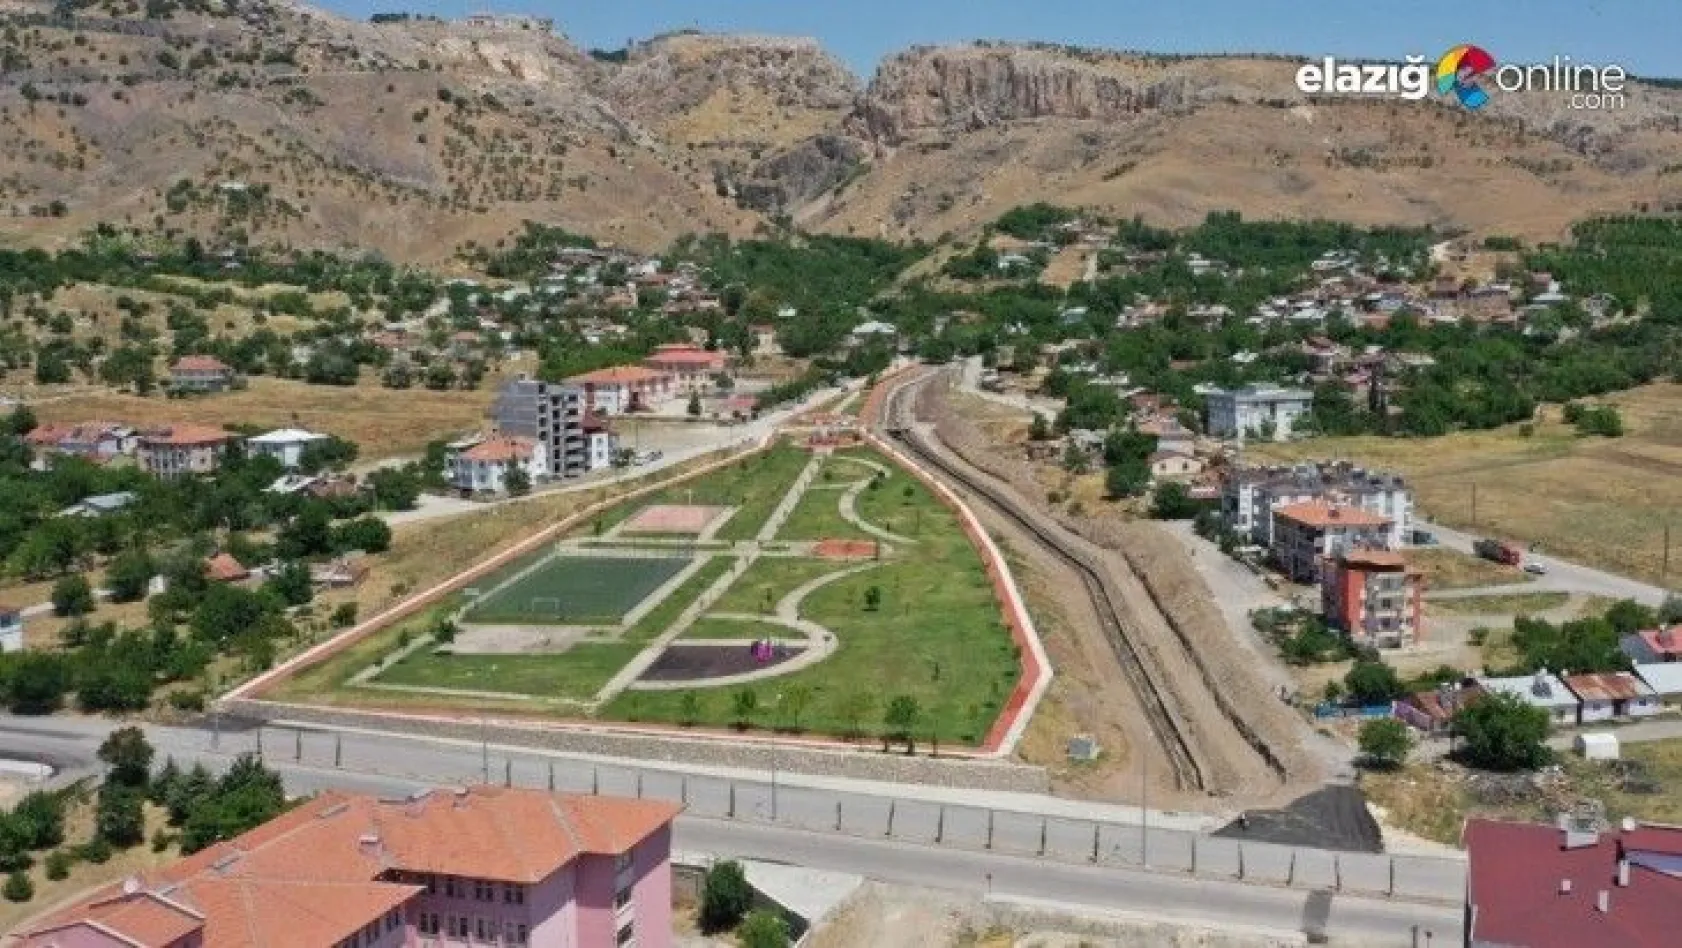 Elazığ'da çevre düzenlemesi ve park yapımı projesi başladı